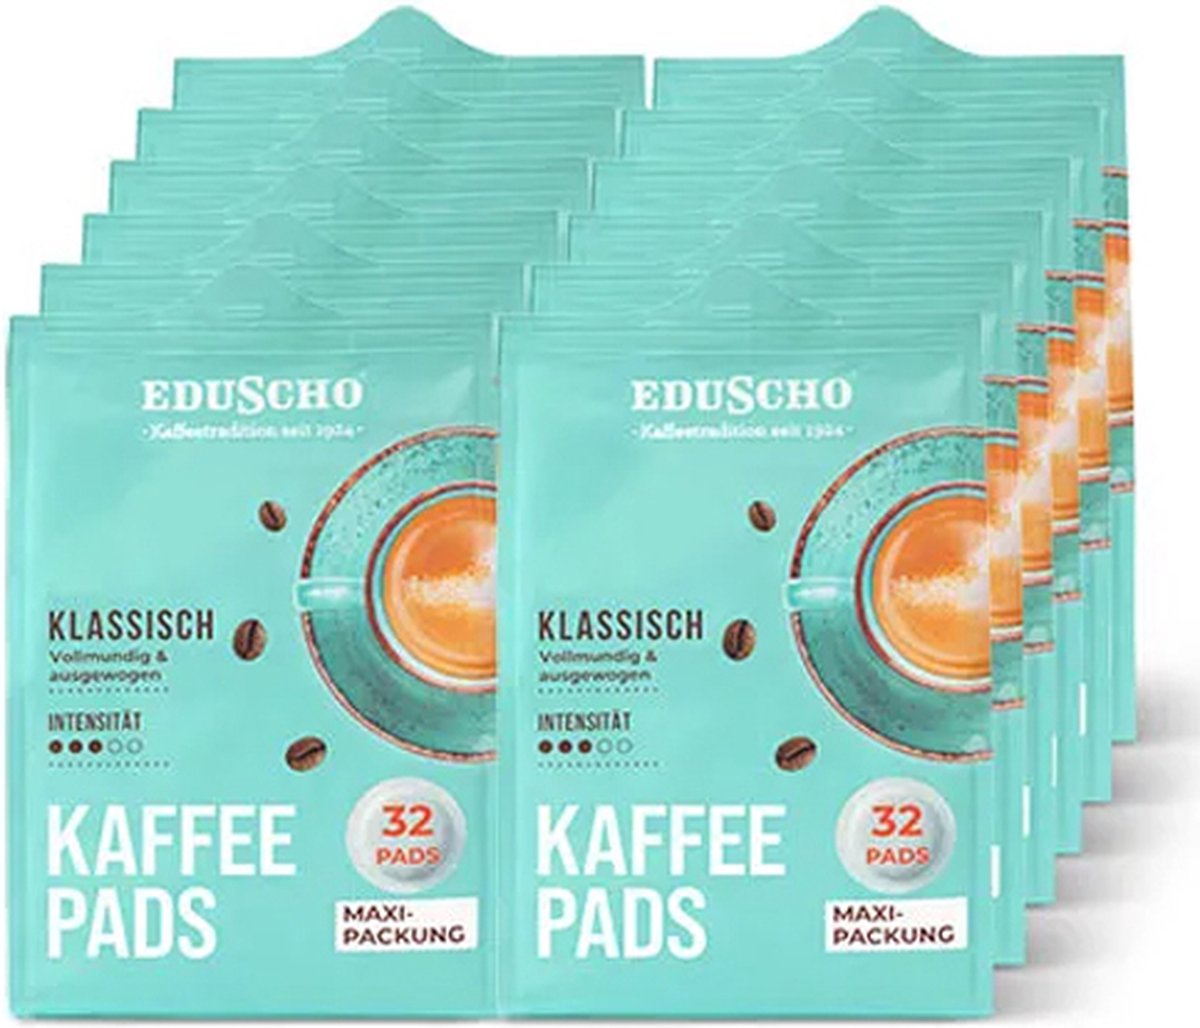 Eduscho - Klassisch - 12x 32 pads